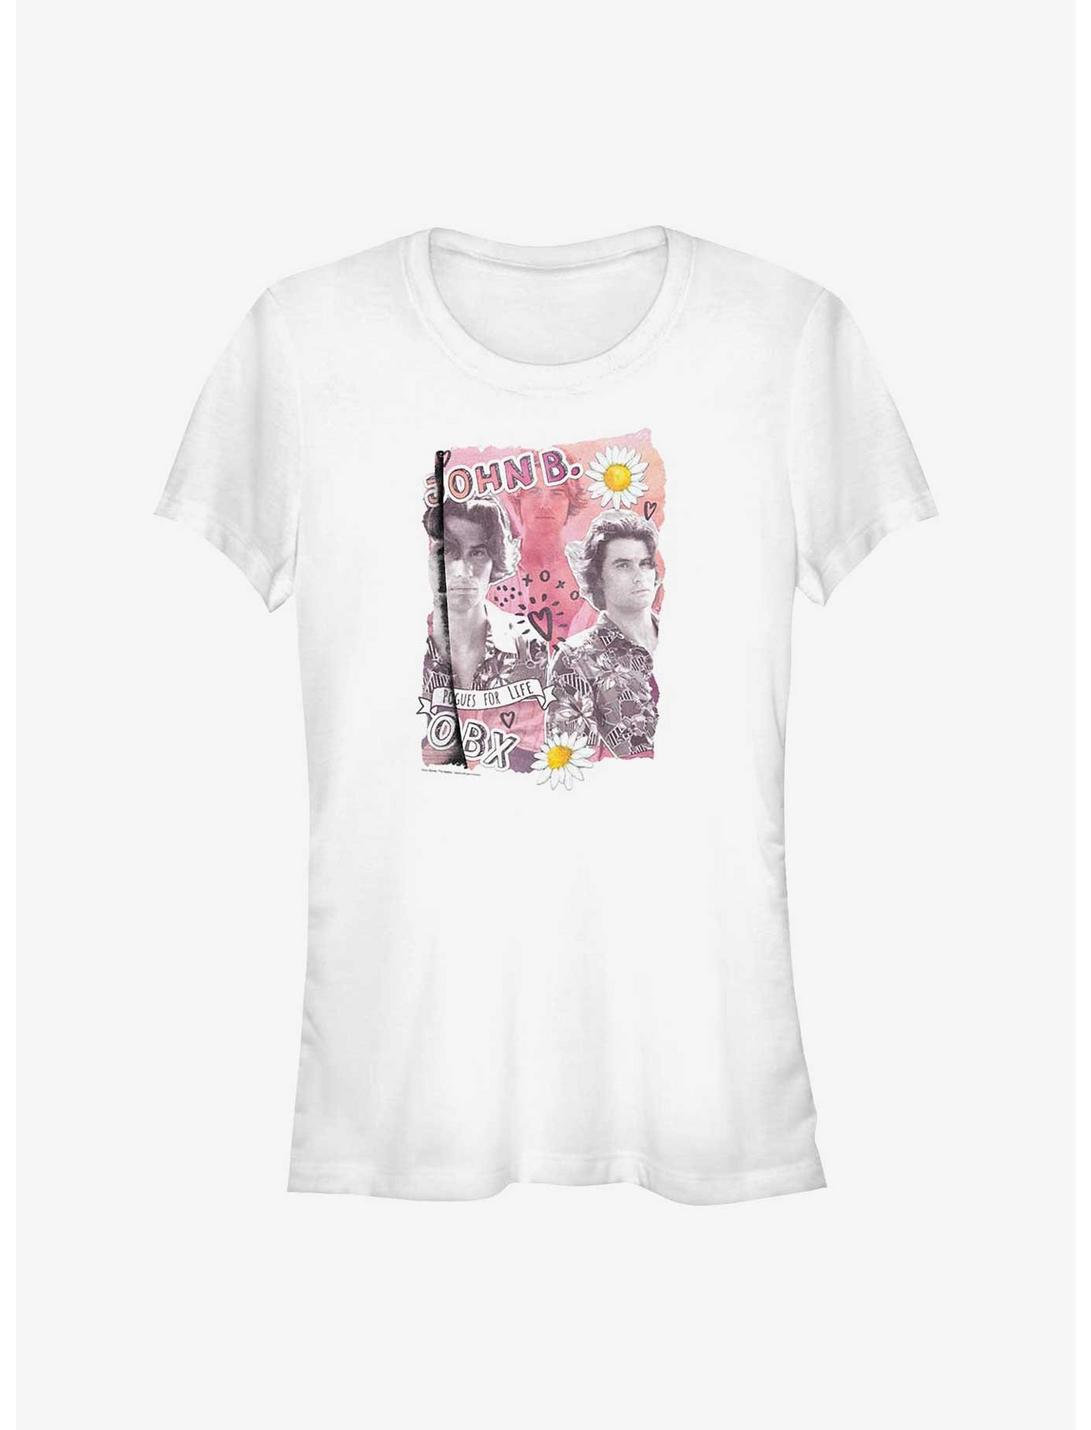 Outer Banks John B. Collage Girls T-Shirt, WHITE, hi-res